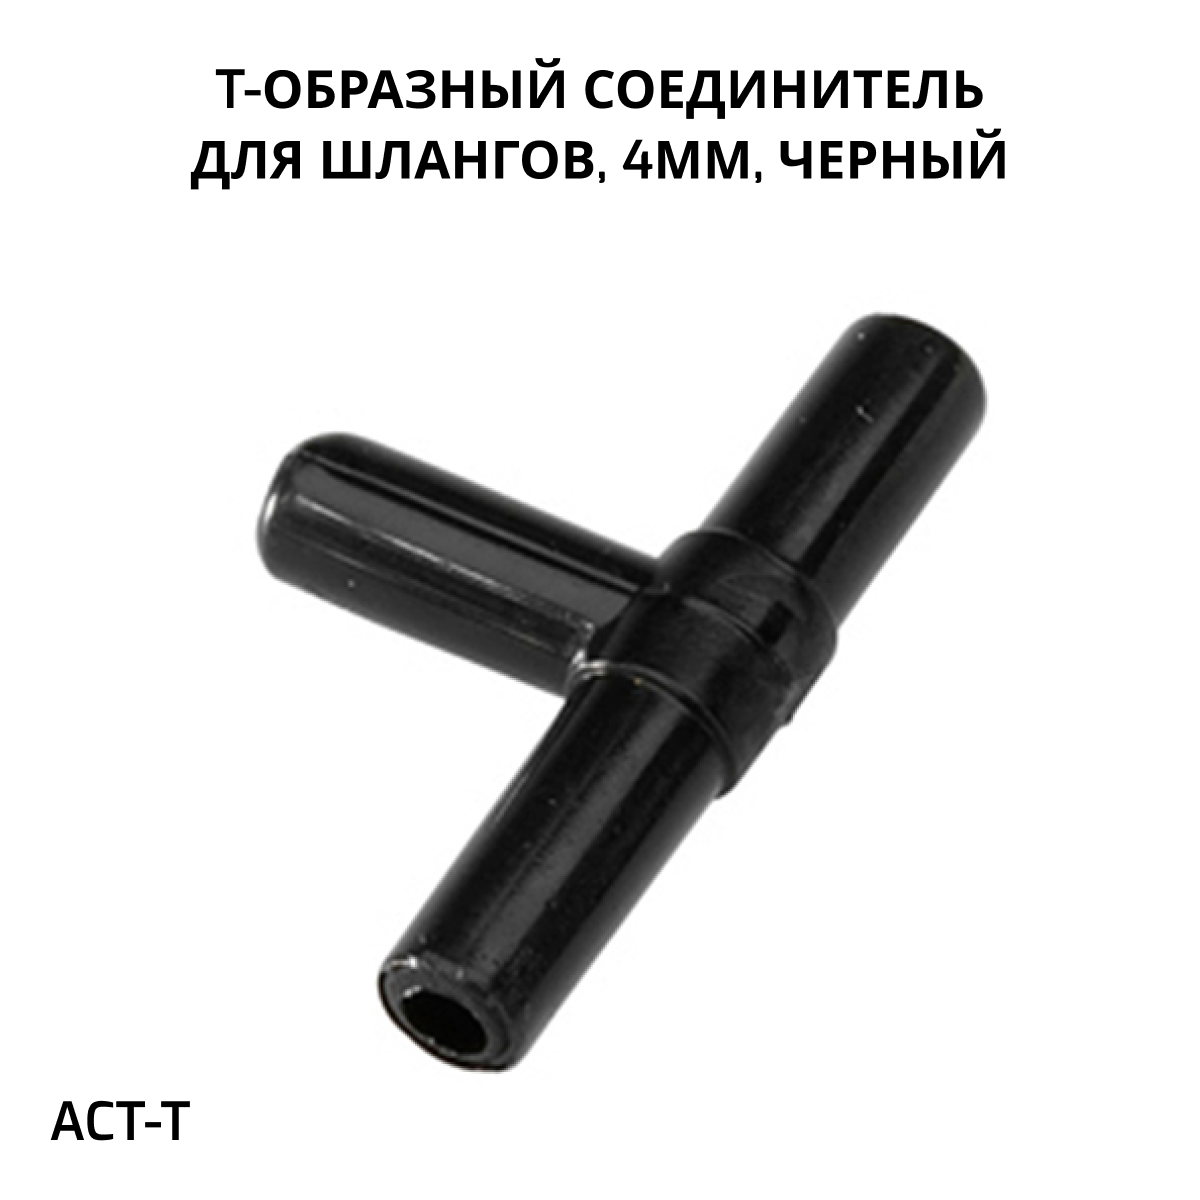 SHANDA ACT-Т Т-образный соединитель для шлангов 4мм, черный, 1шт